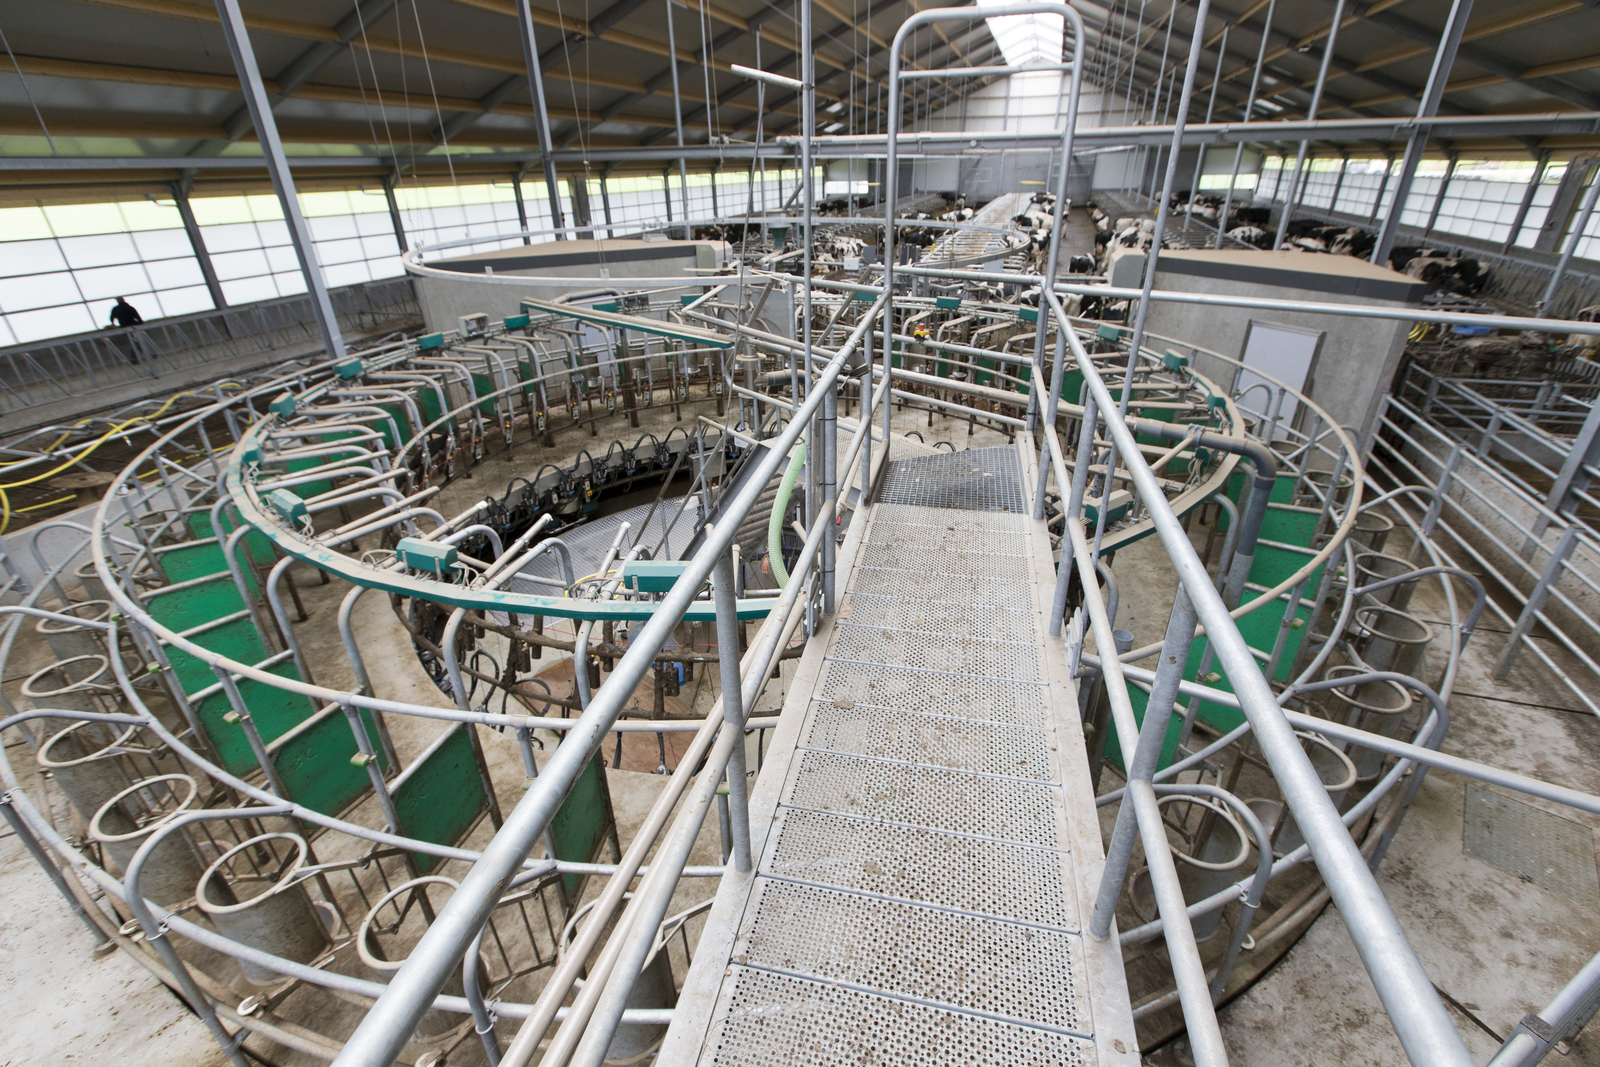 Op naar 2,3 miljoen kilo melk in nieuwe stal